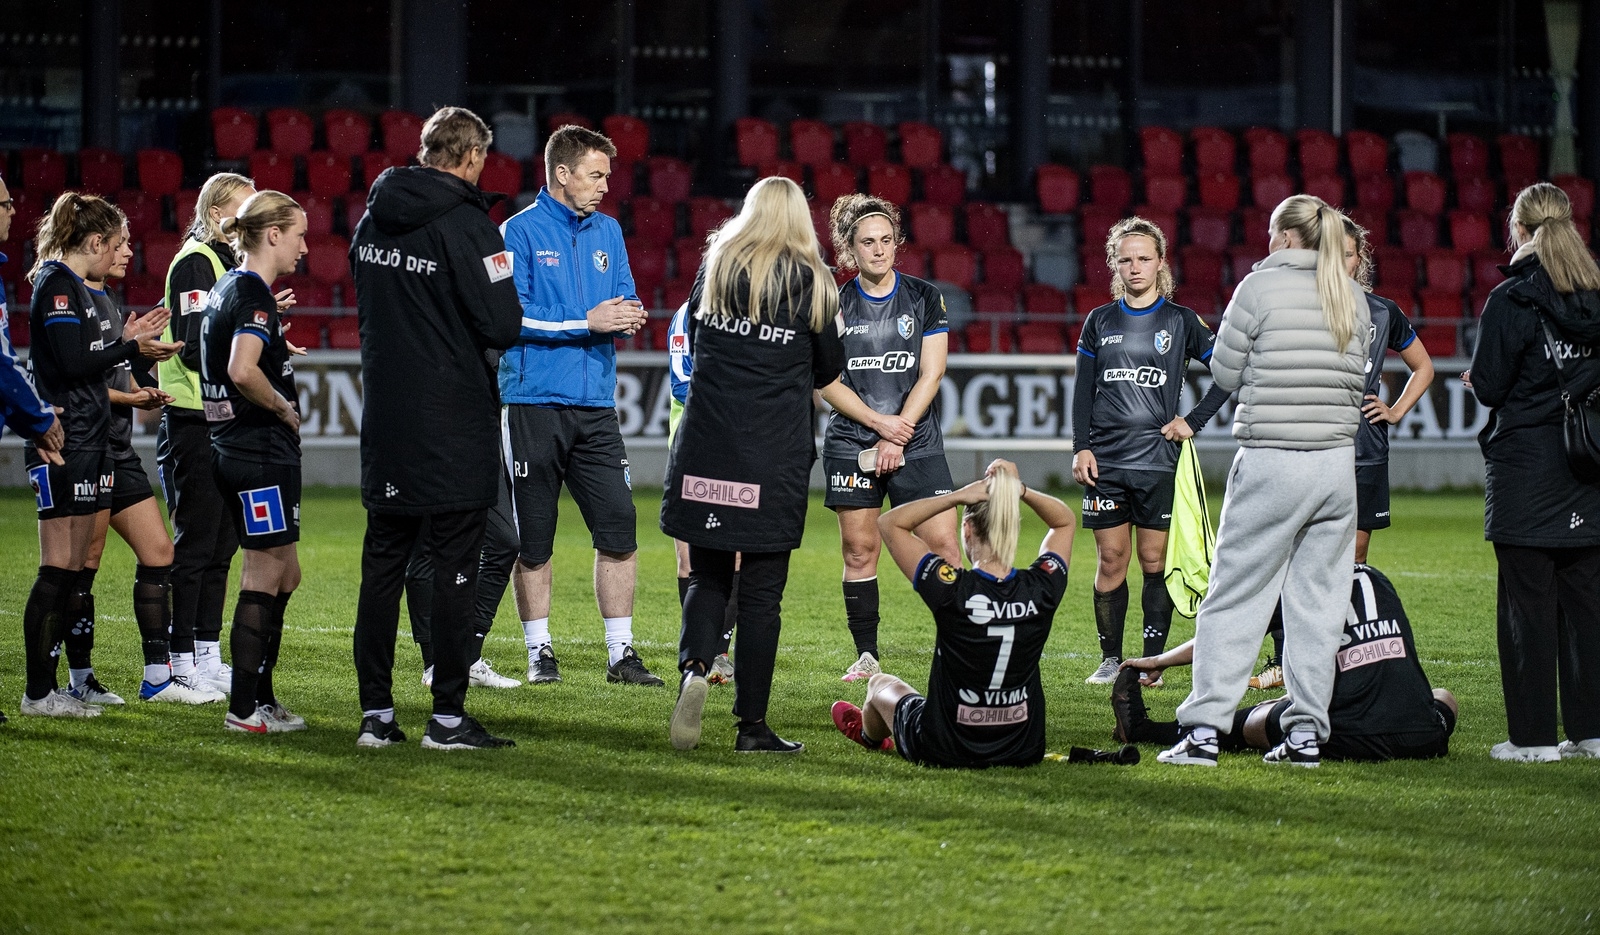 Efter matchen var det inga glada minner bland Växjö DFF: spelare och ledare.